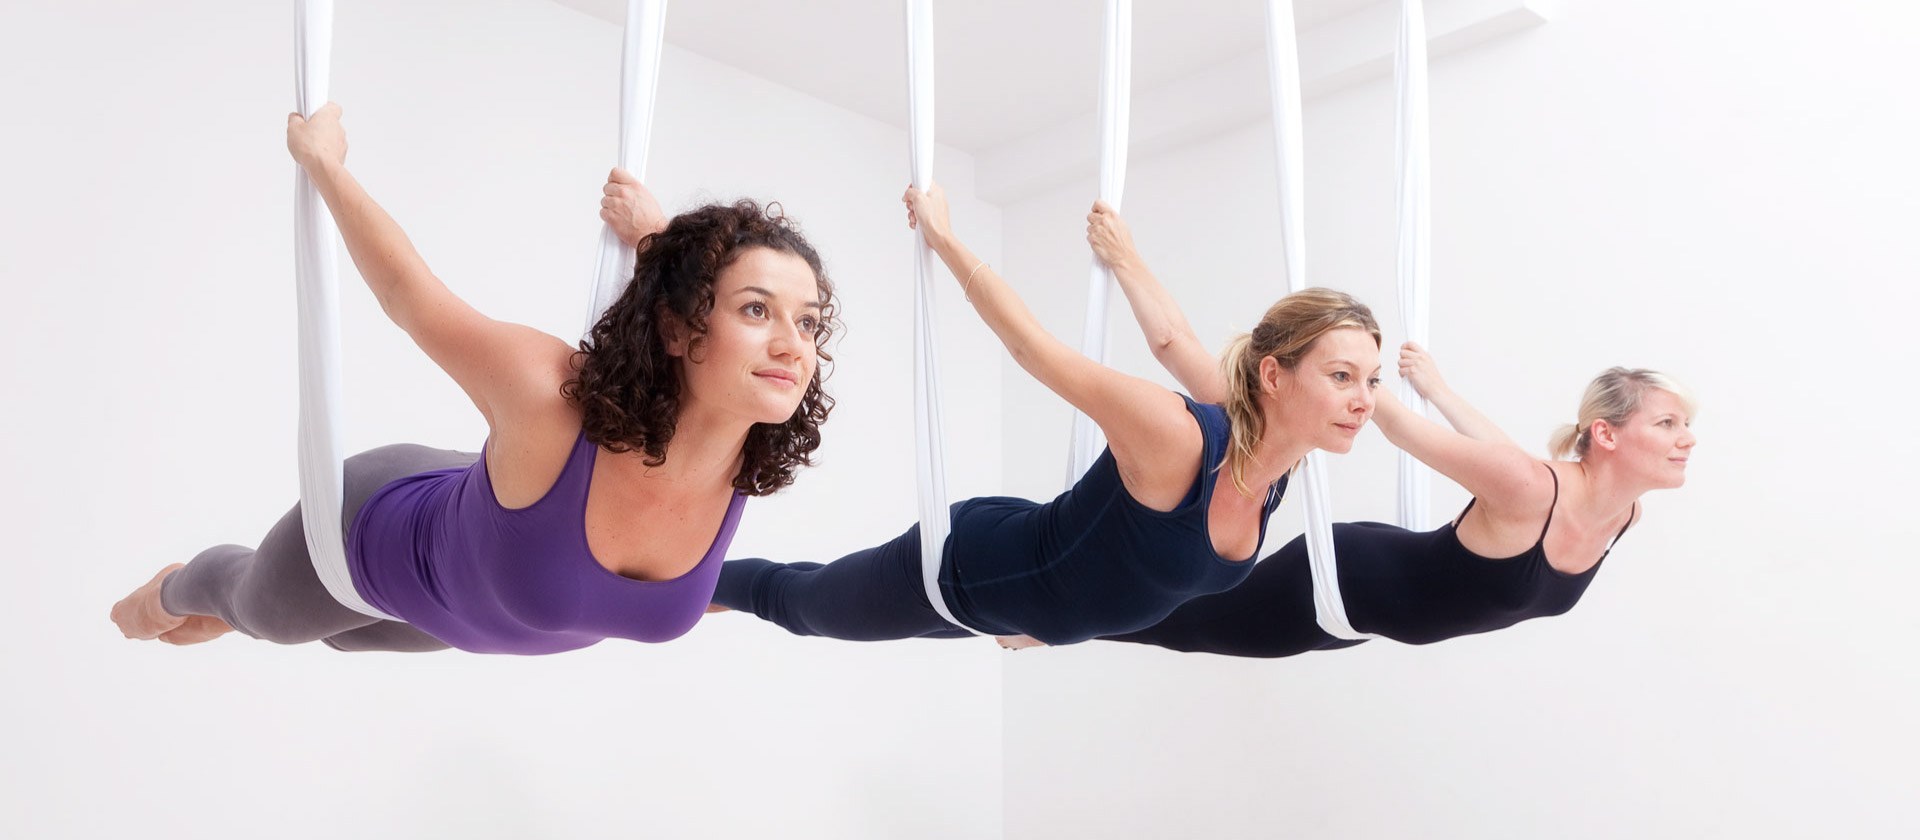 3 sai lầm nghiêm trọng khi tập yoga bay bạn cần tránh